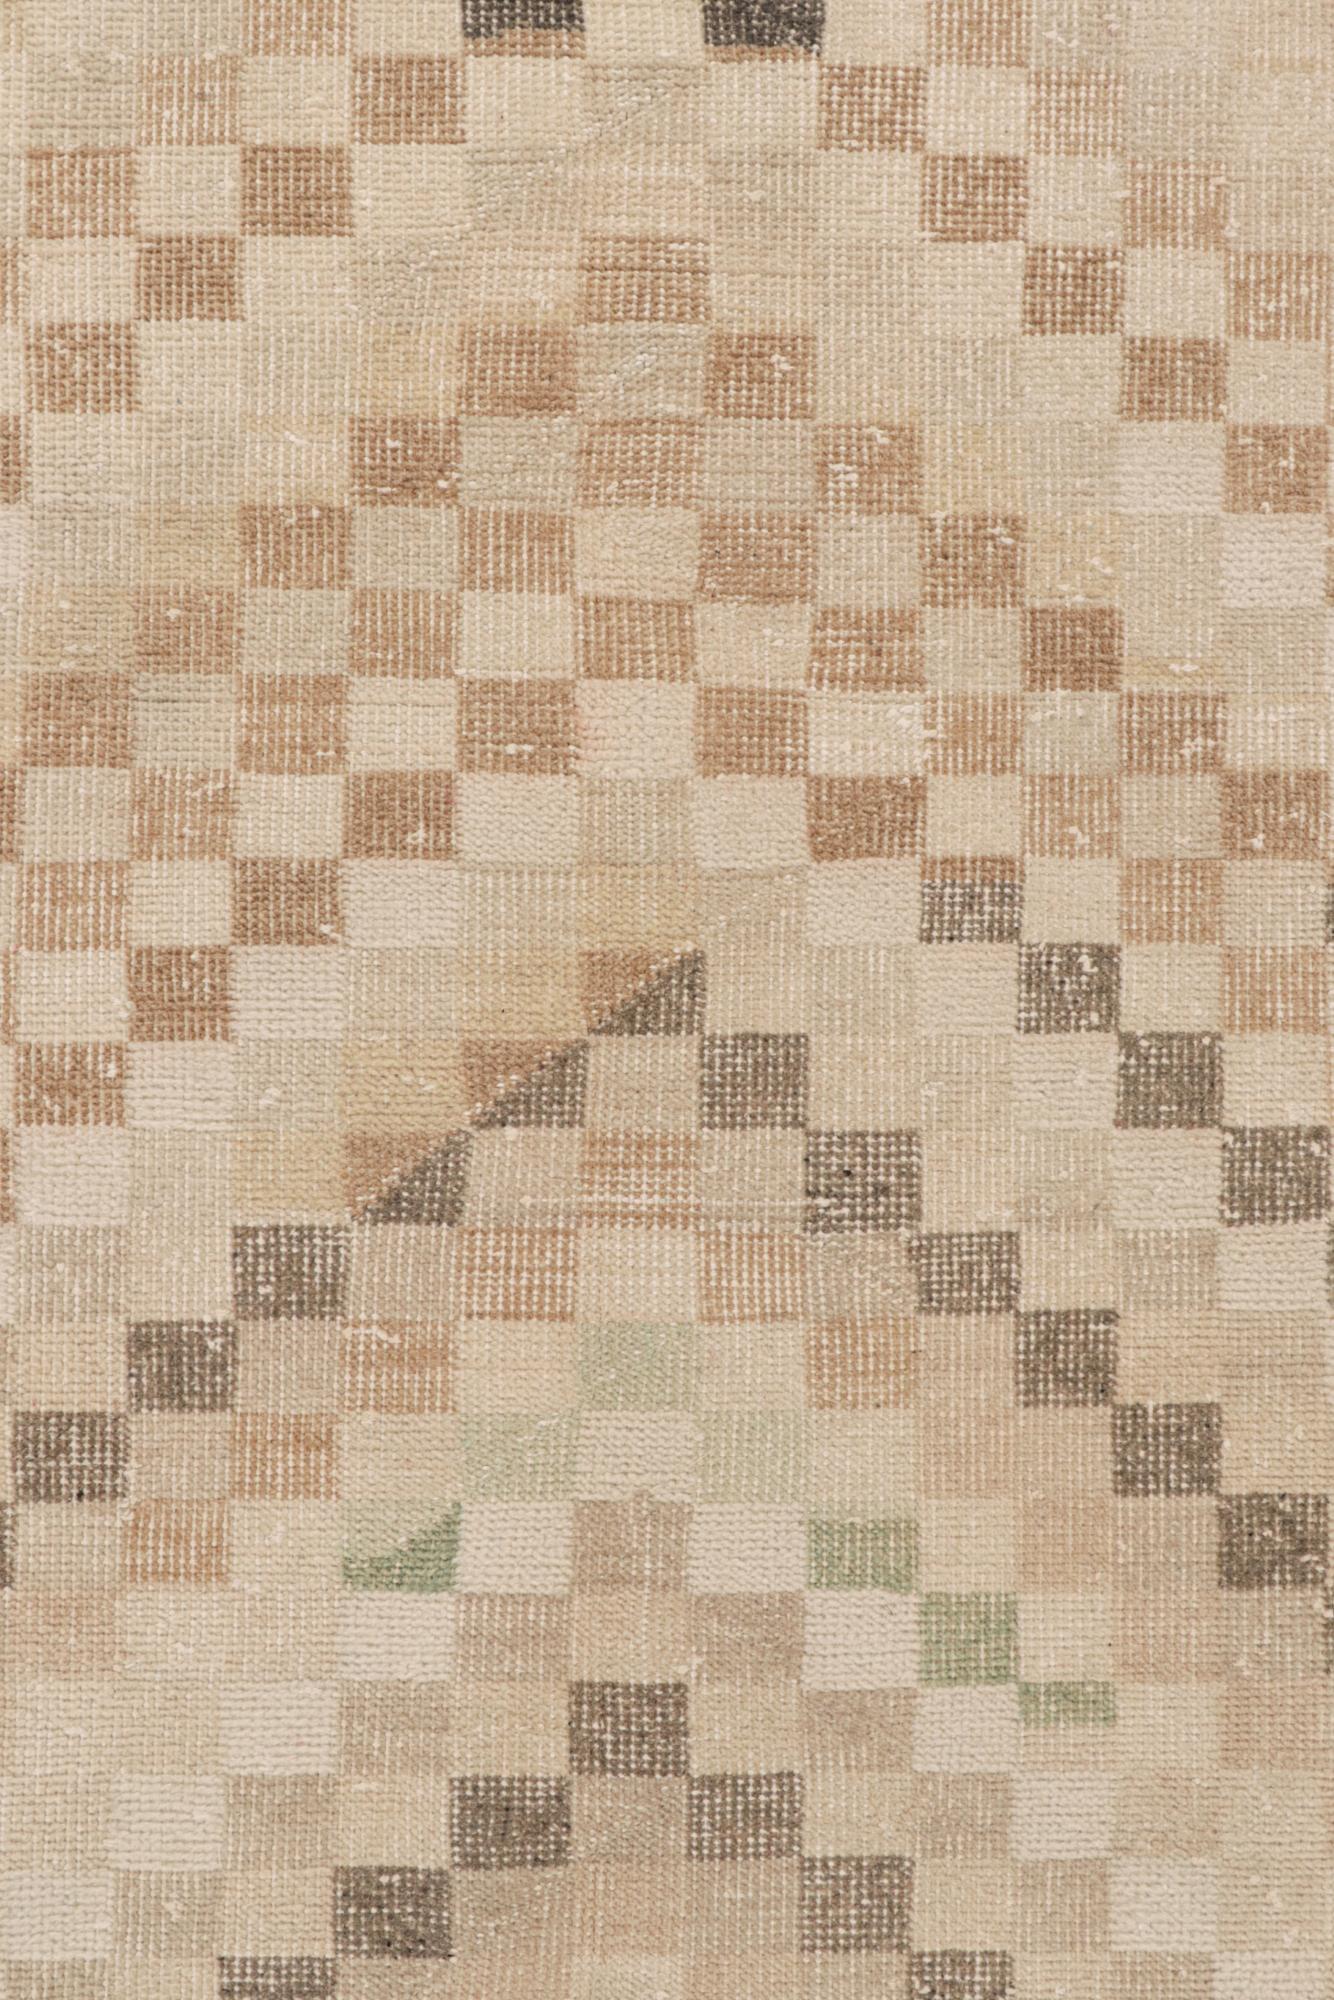 Mid-Century Modern Vintage Zeki Müren Rug in Beige-Brown Geometric Patterns by Rug & Kilim